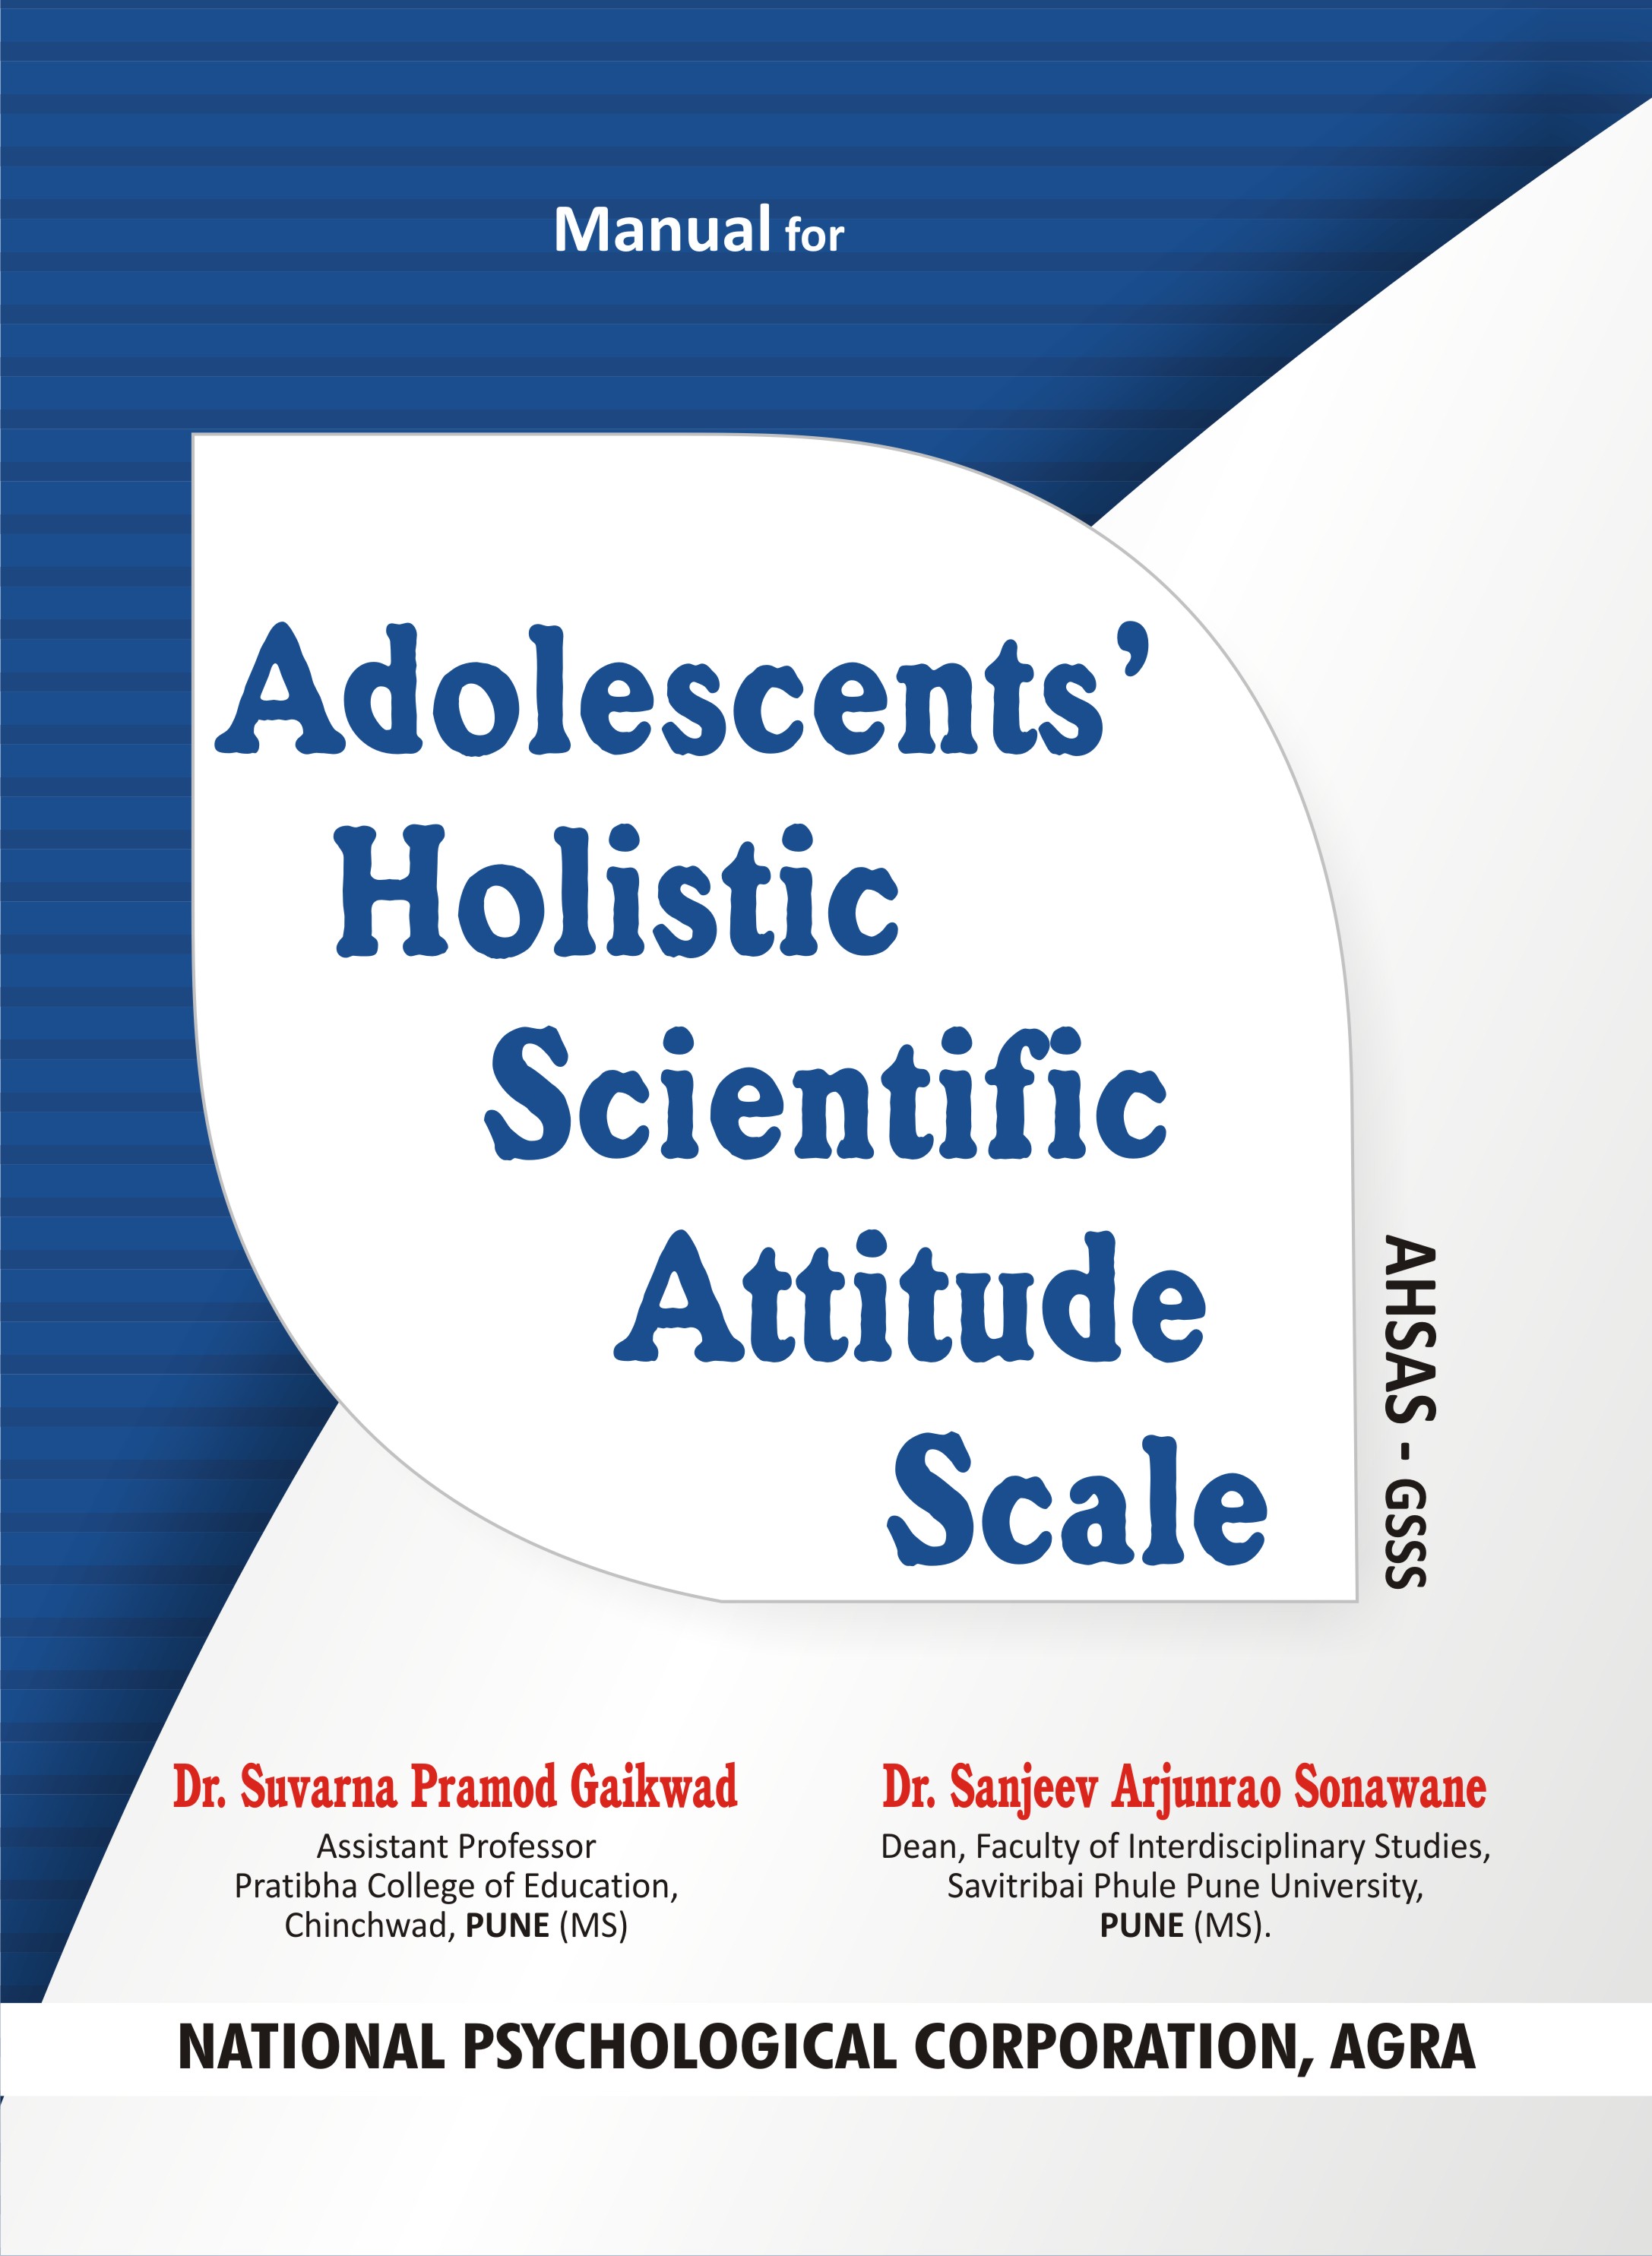 ADOLESCENTS-HOLISTIC-SCIENTIFIC-ATTITUDE-SCALE